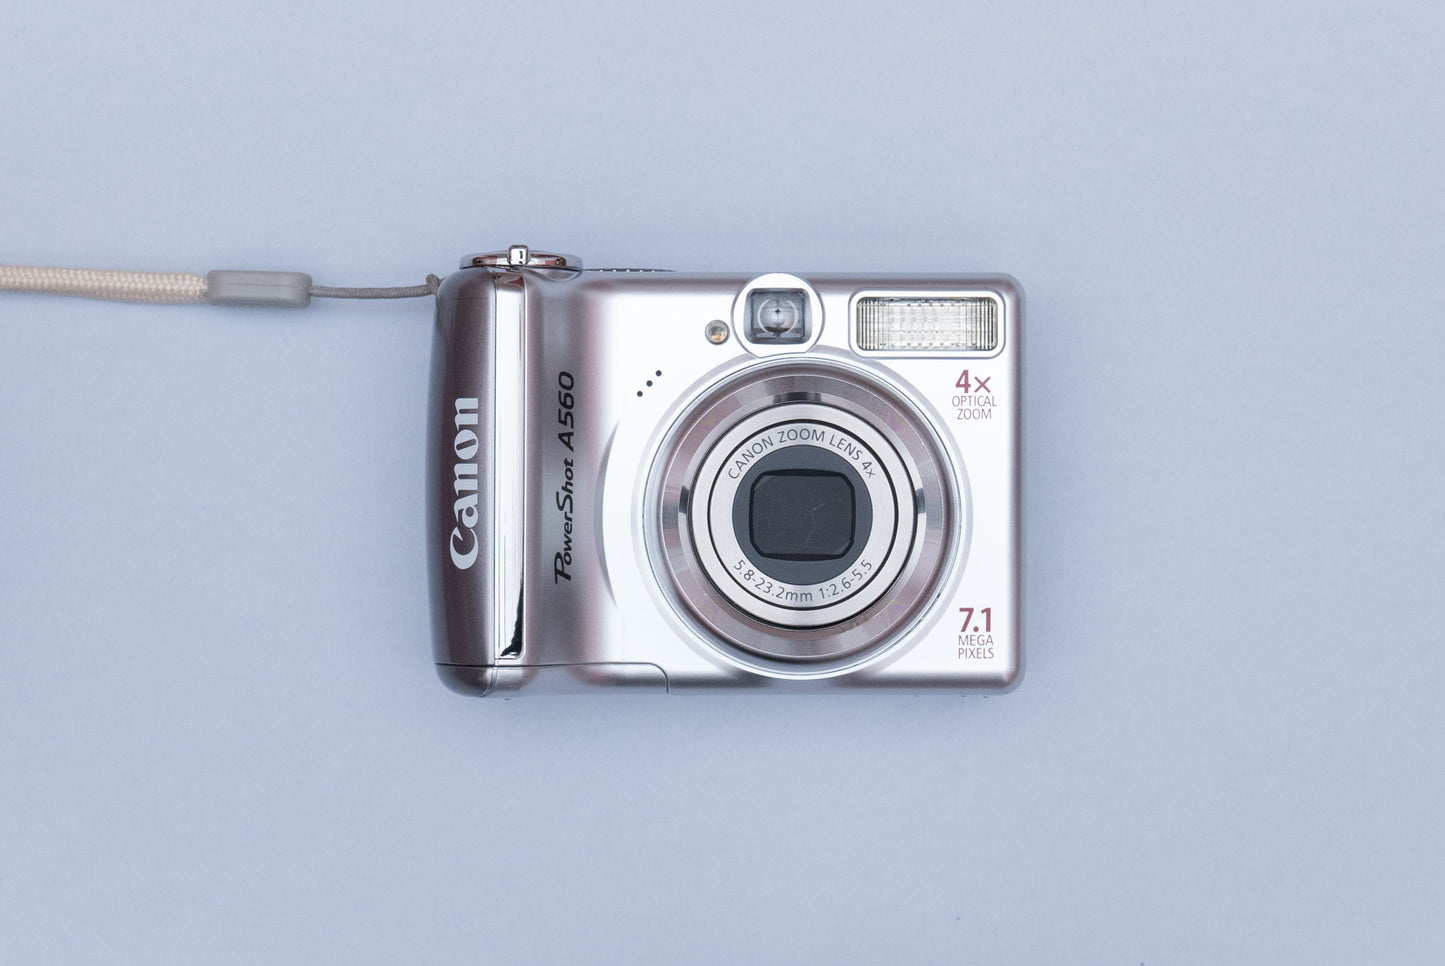 Canon PowerShot A560 Compact Y2K Digital Camera